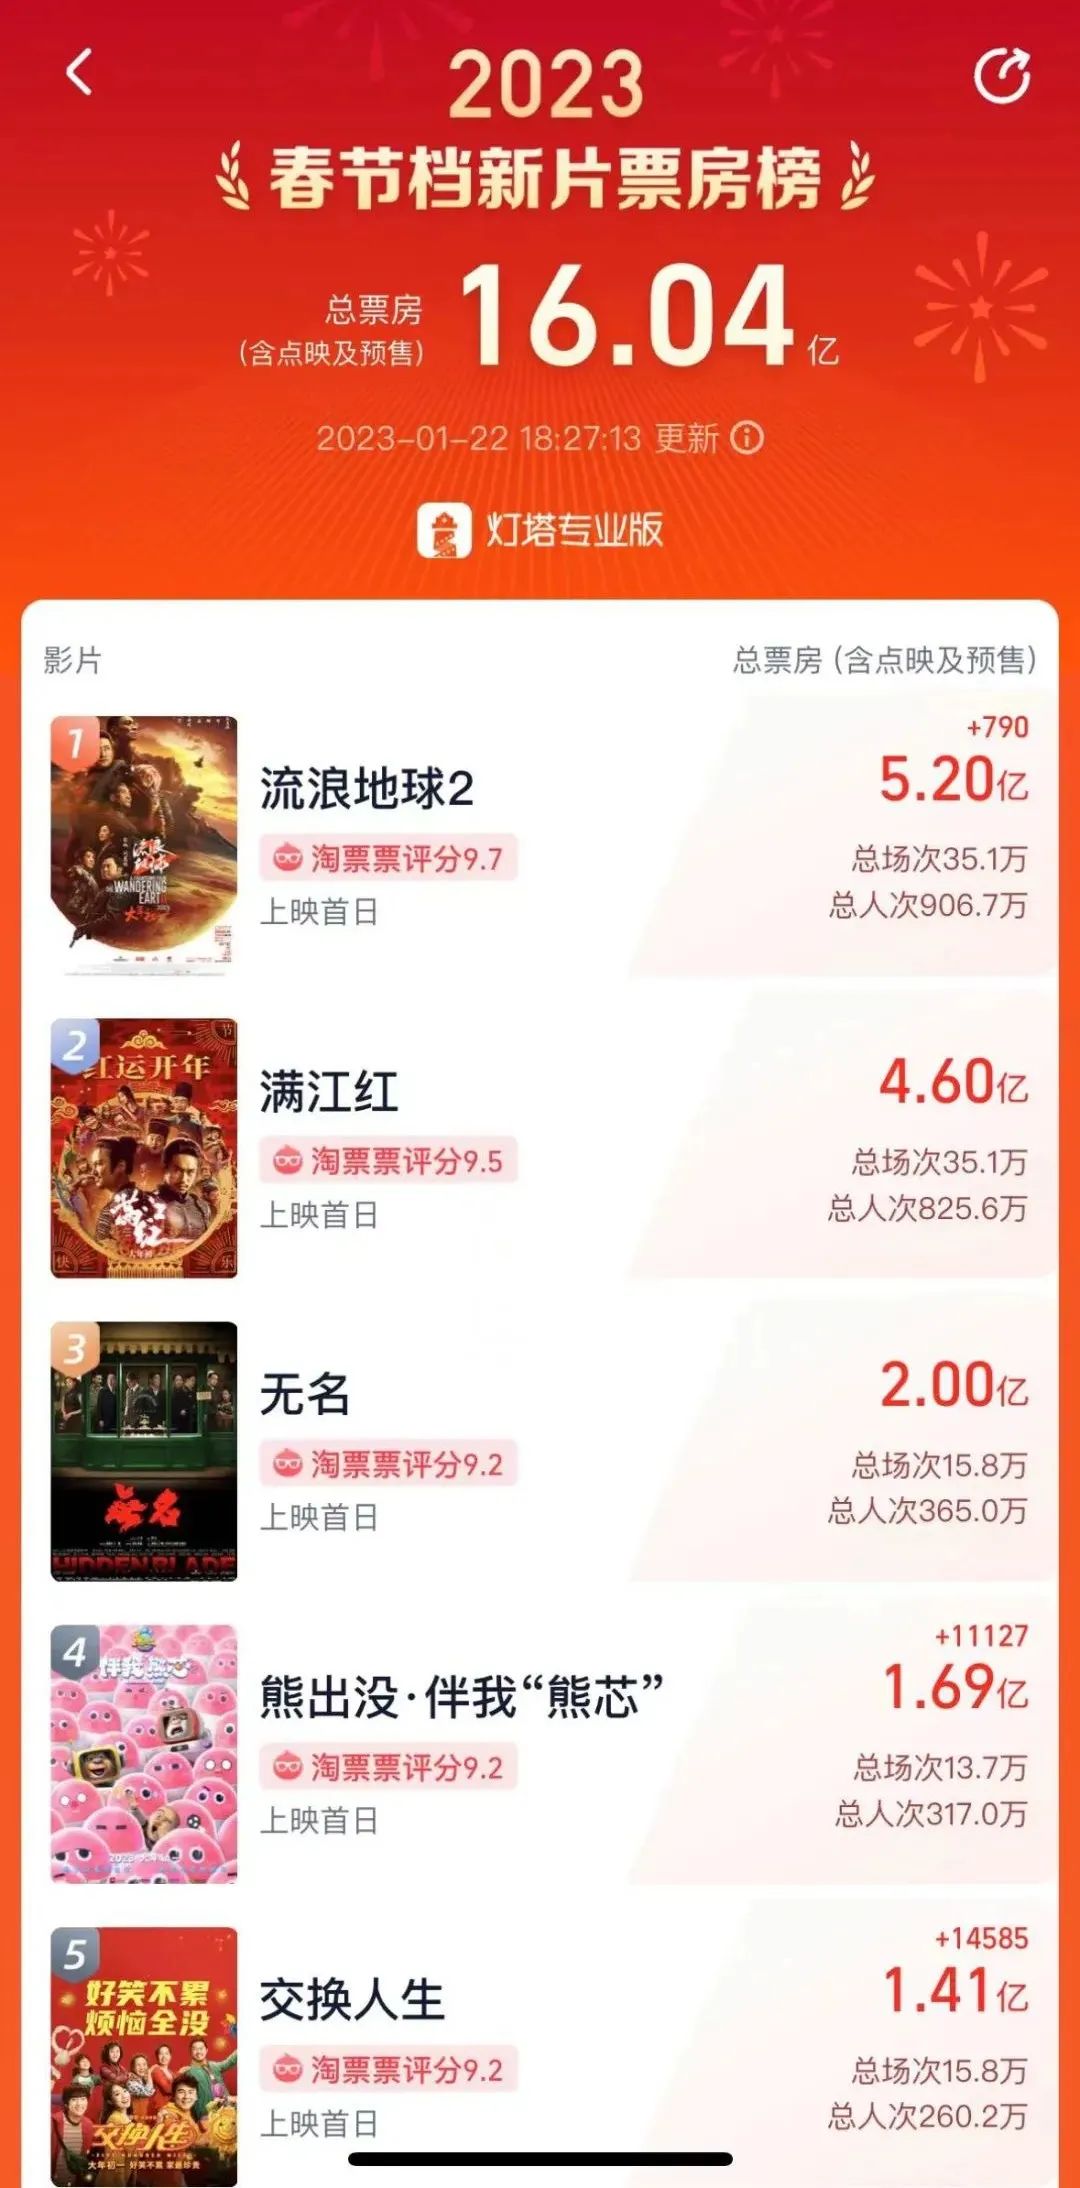 中国电影市场开门红无疑！《流浪地球2》后来居上成榜首 